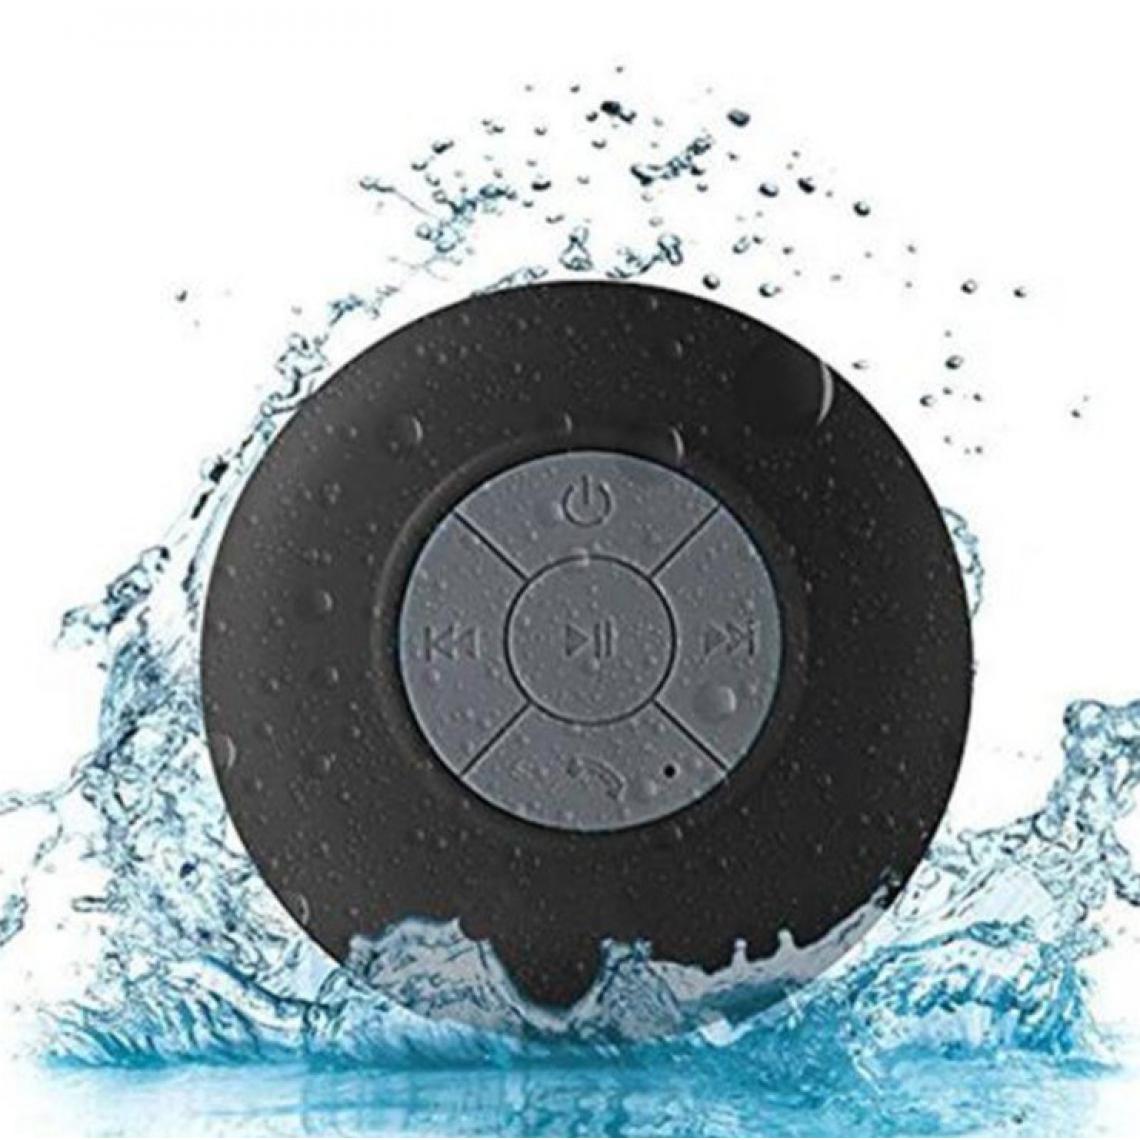 Shot - Enceinte Waterproof Bluetooth pour "WIKO View 5" Smartphone Ventouse Haut-Parleur Micro Douche Petite (NOIR) - Autres accessoires smartphone